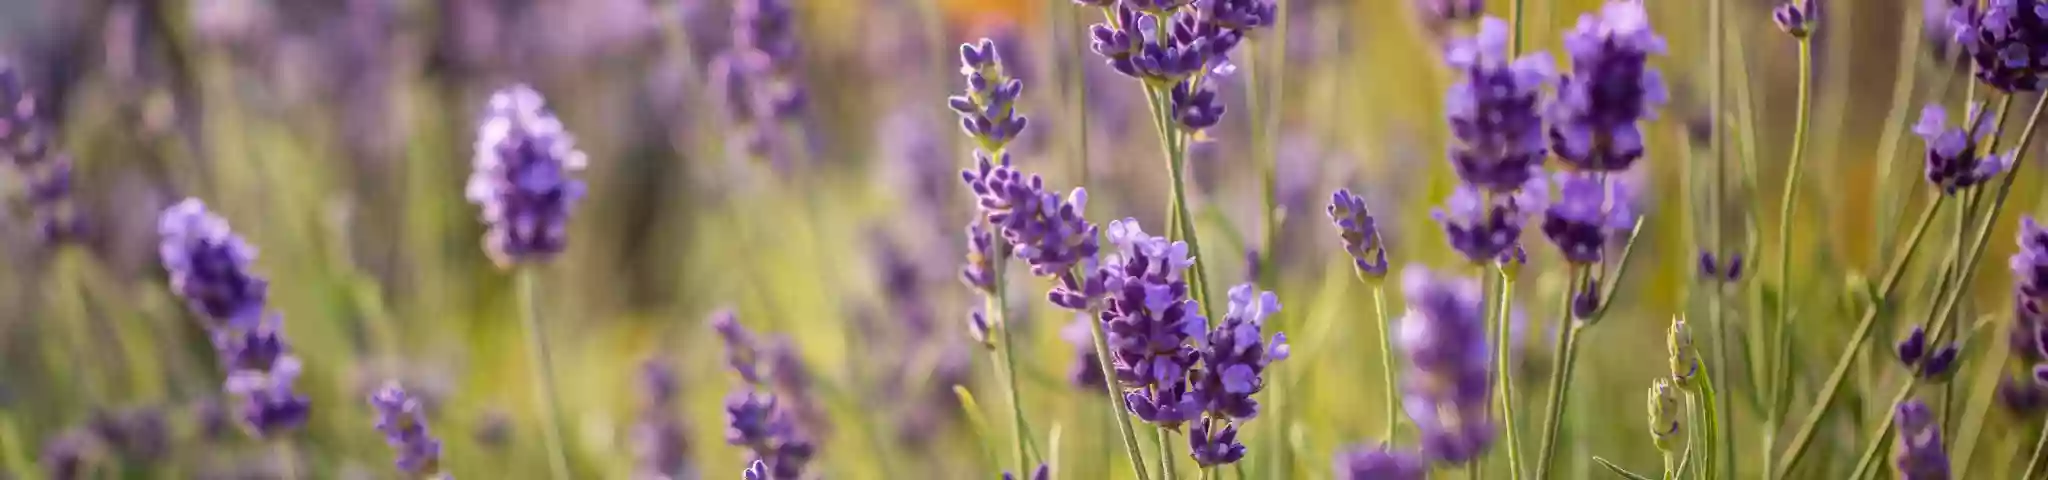 Lavender Flowers In garden